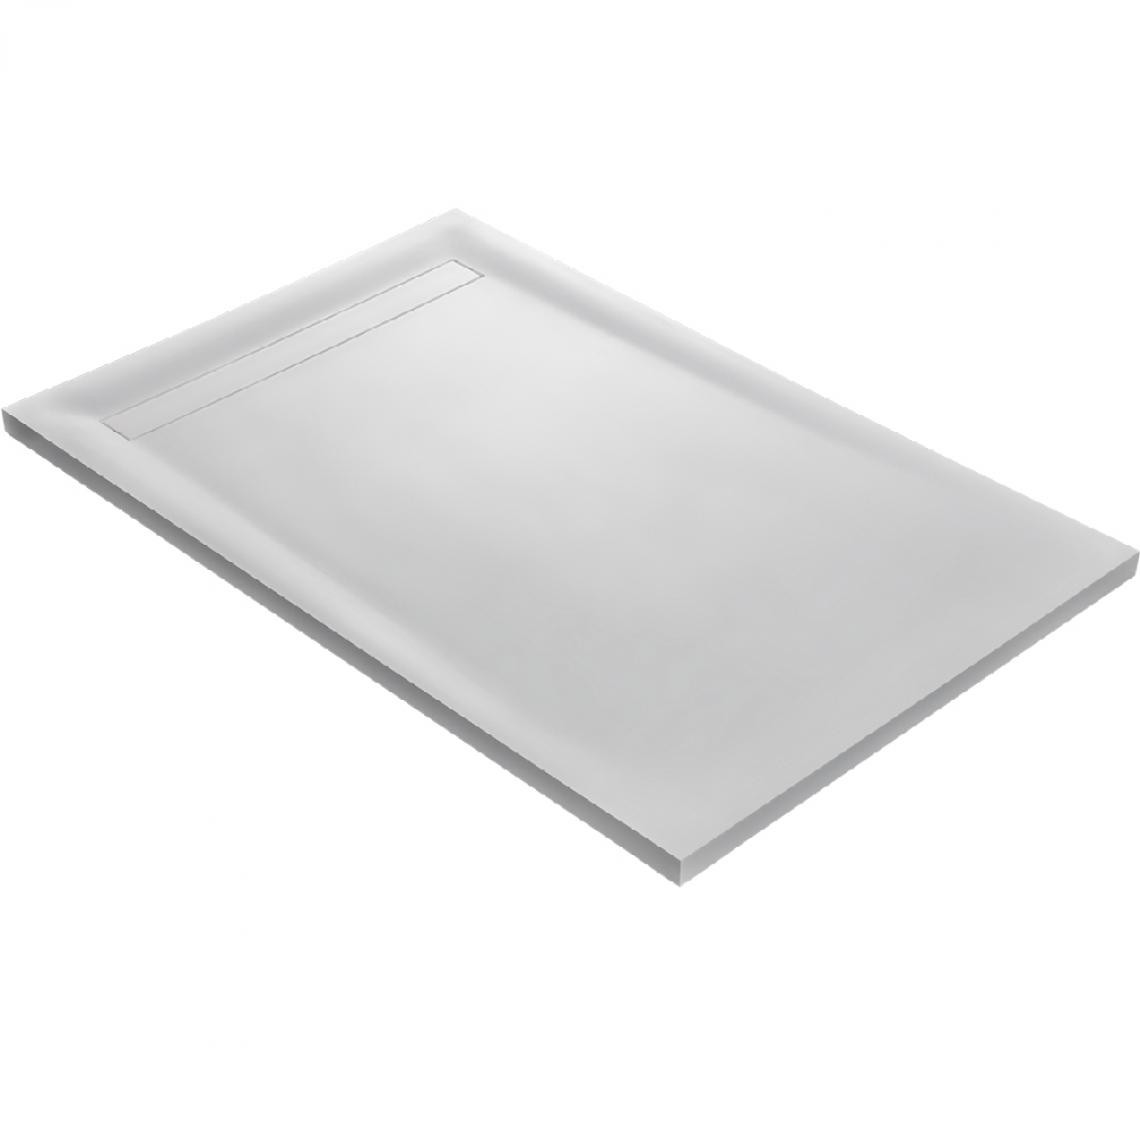 U-Tile - Receveur de douche 100 x 100 cm résine solid surface blanc - Receveur de douche